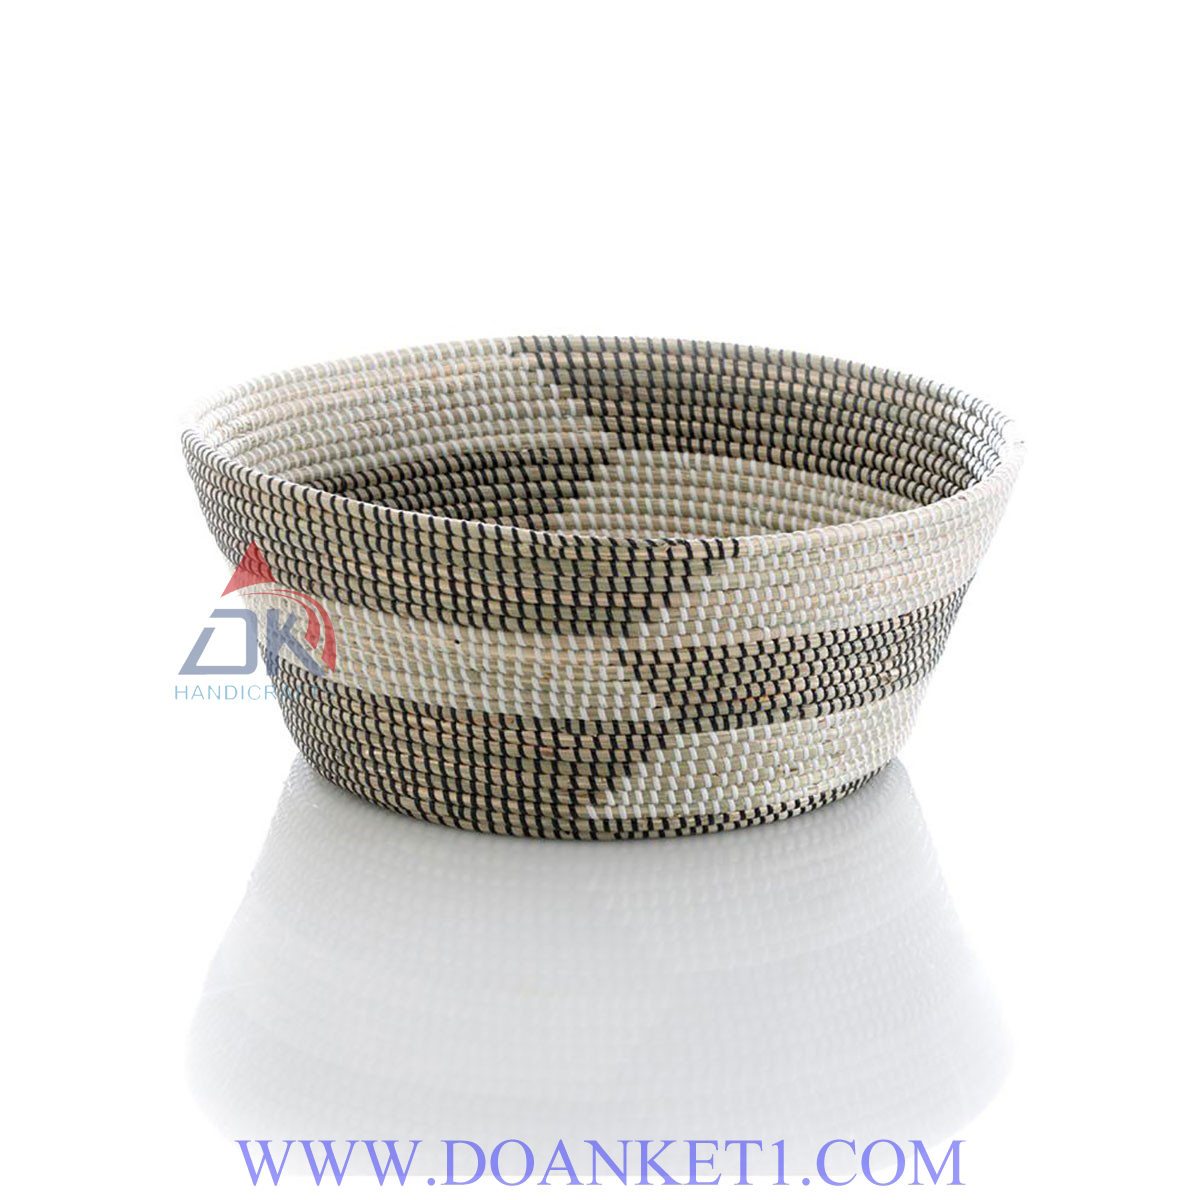 Seagrass Basket # DK180